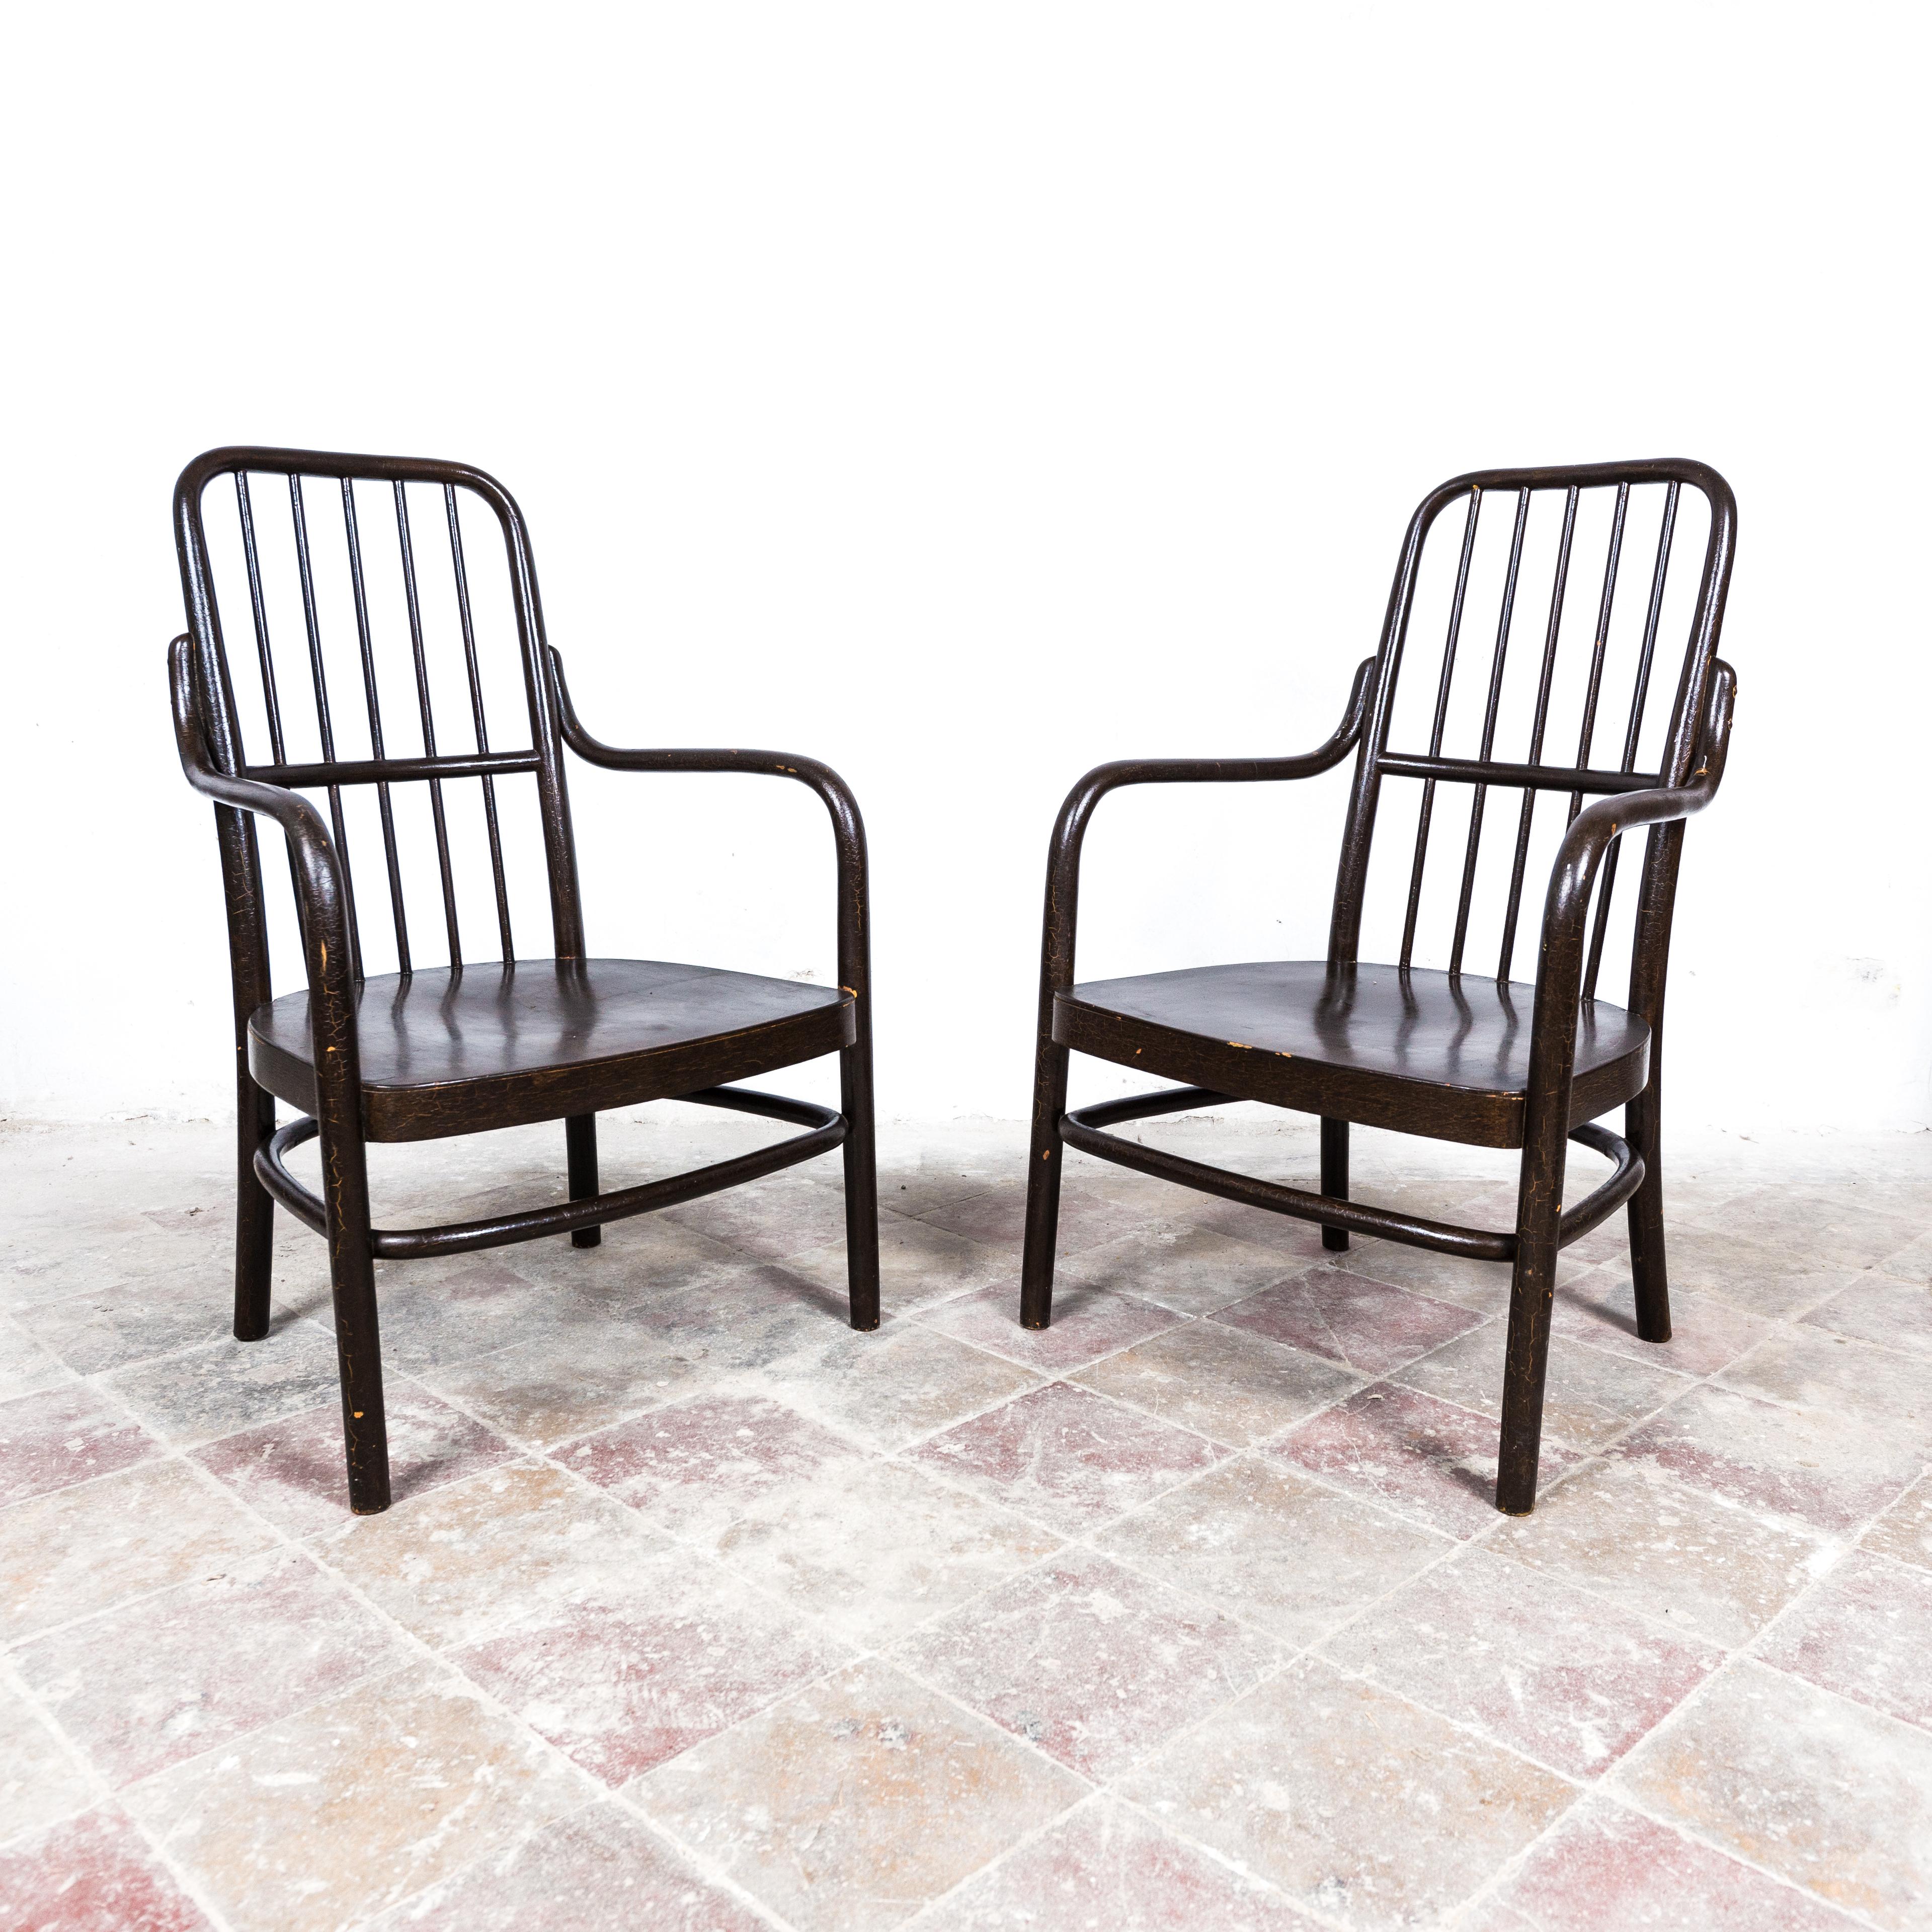 Ein Paar seltener modernistischer Sessel, die erstmals 1928 auf der Wiener Werkbundausstellung gezeigt wurden.

Die Stühle sind aus massiver Buche (Bugholz) und Sperrholz gefertigt und mit einer braunen Lackschicht überzogen. Sie tragen die